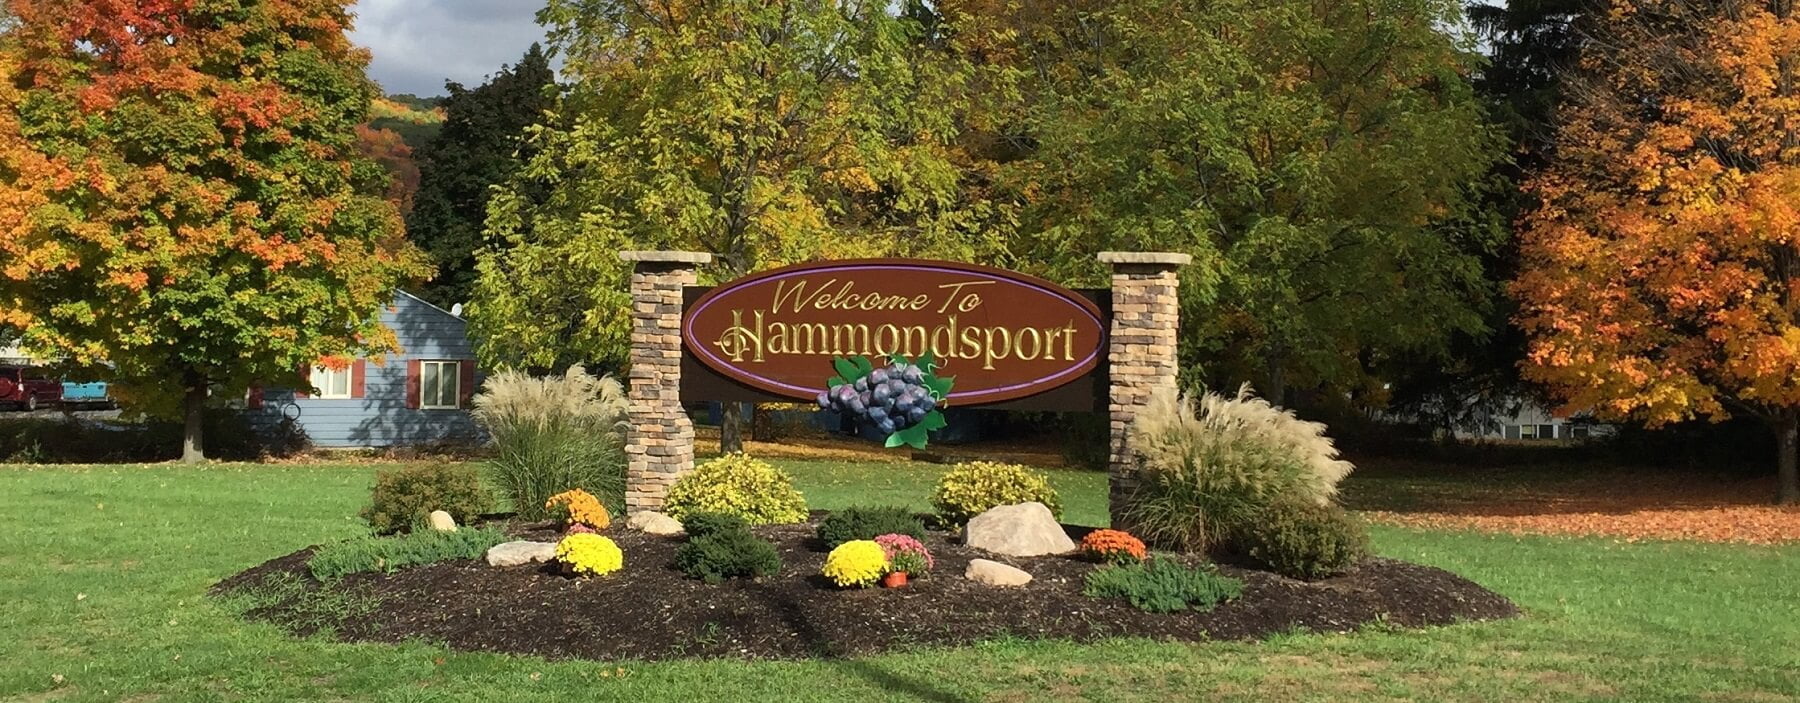 Hammondsport NY Welcome Sign